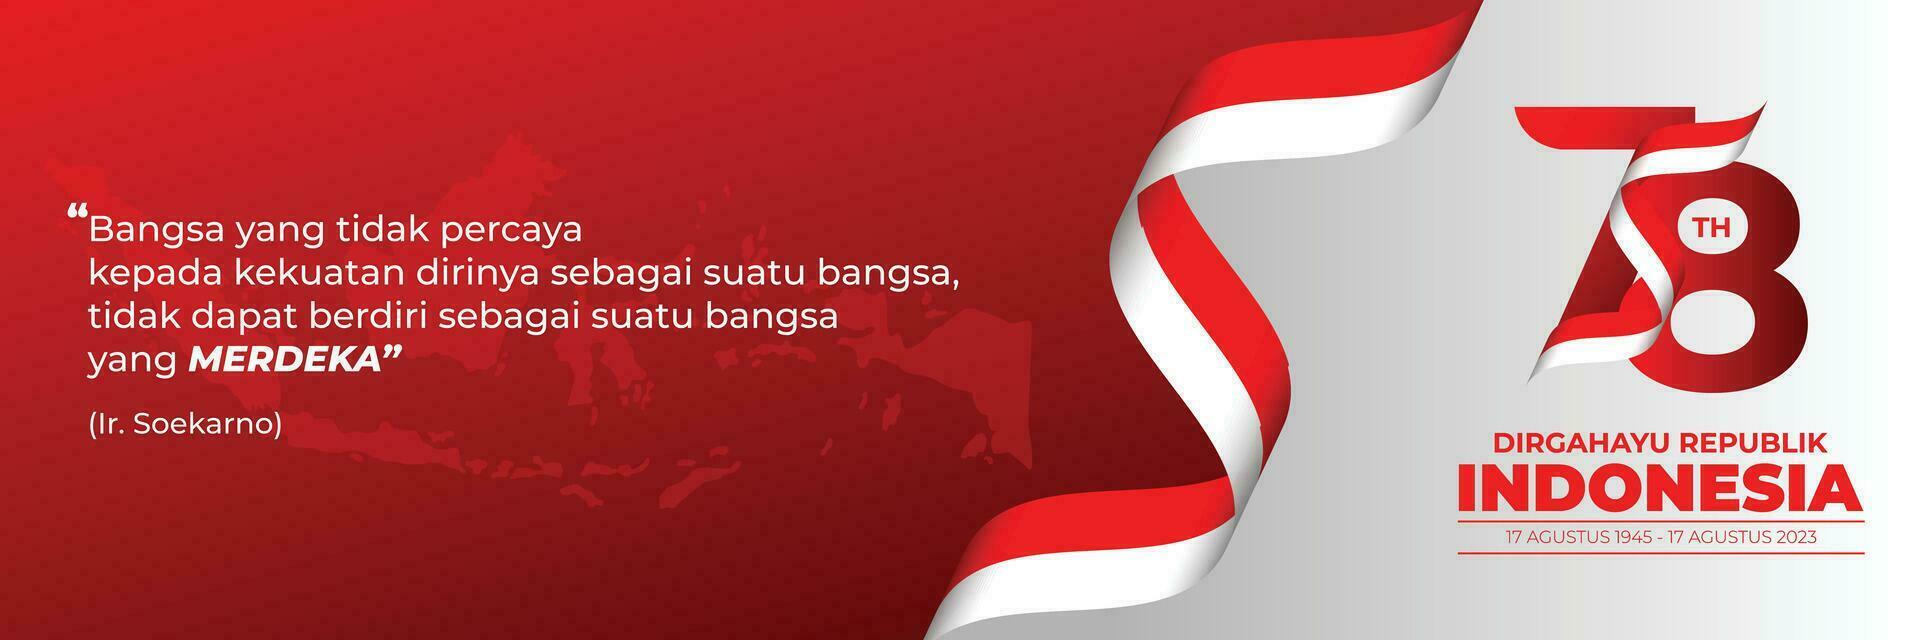 Dirgahayu Republik Indonesia Banner Template vector